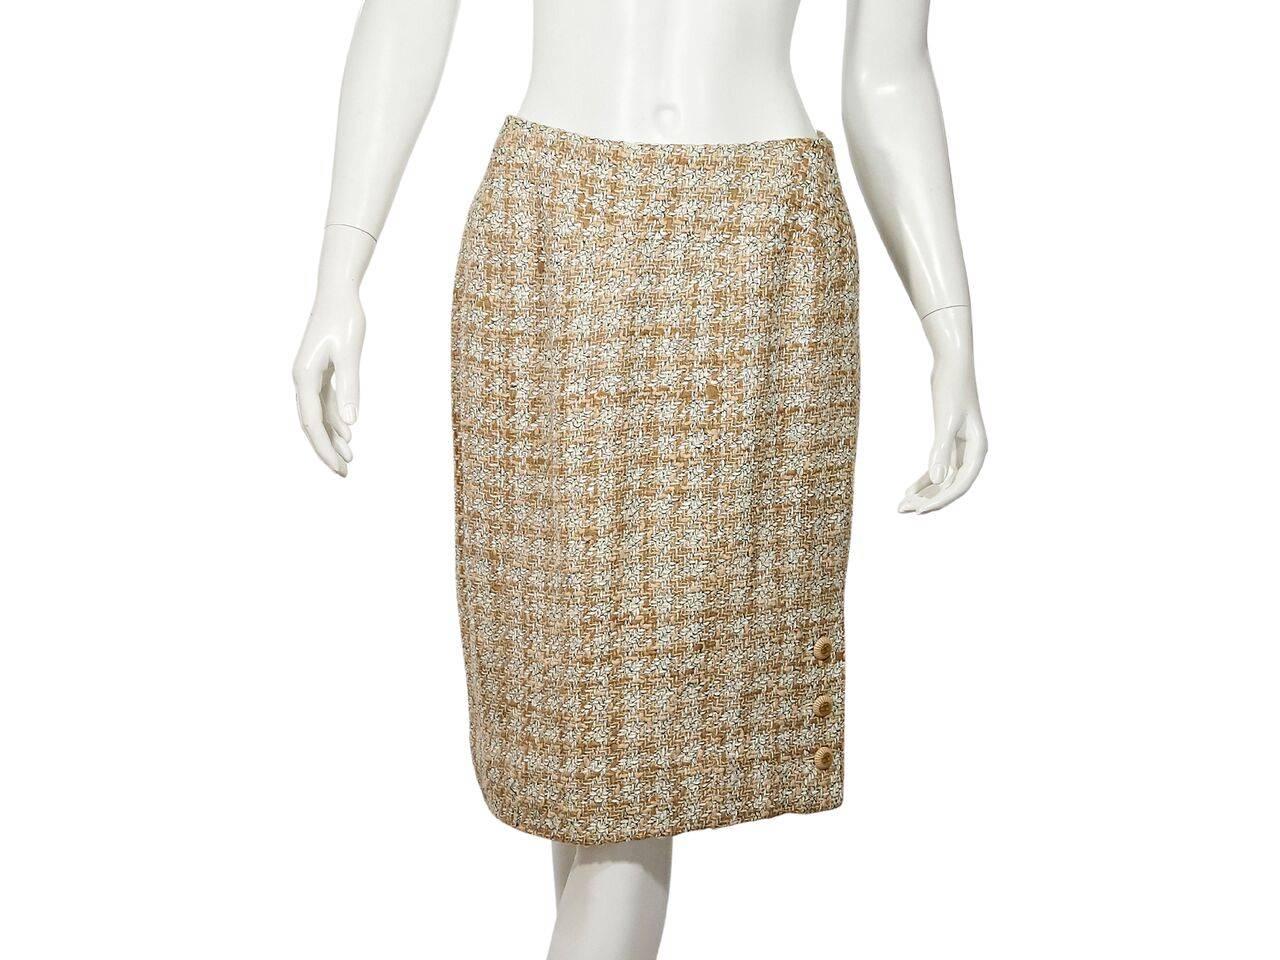 Tan & White Vintage Chanel Tweed Wool Skirt Suit 1